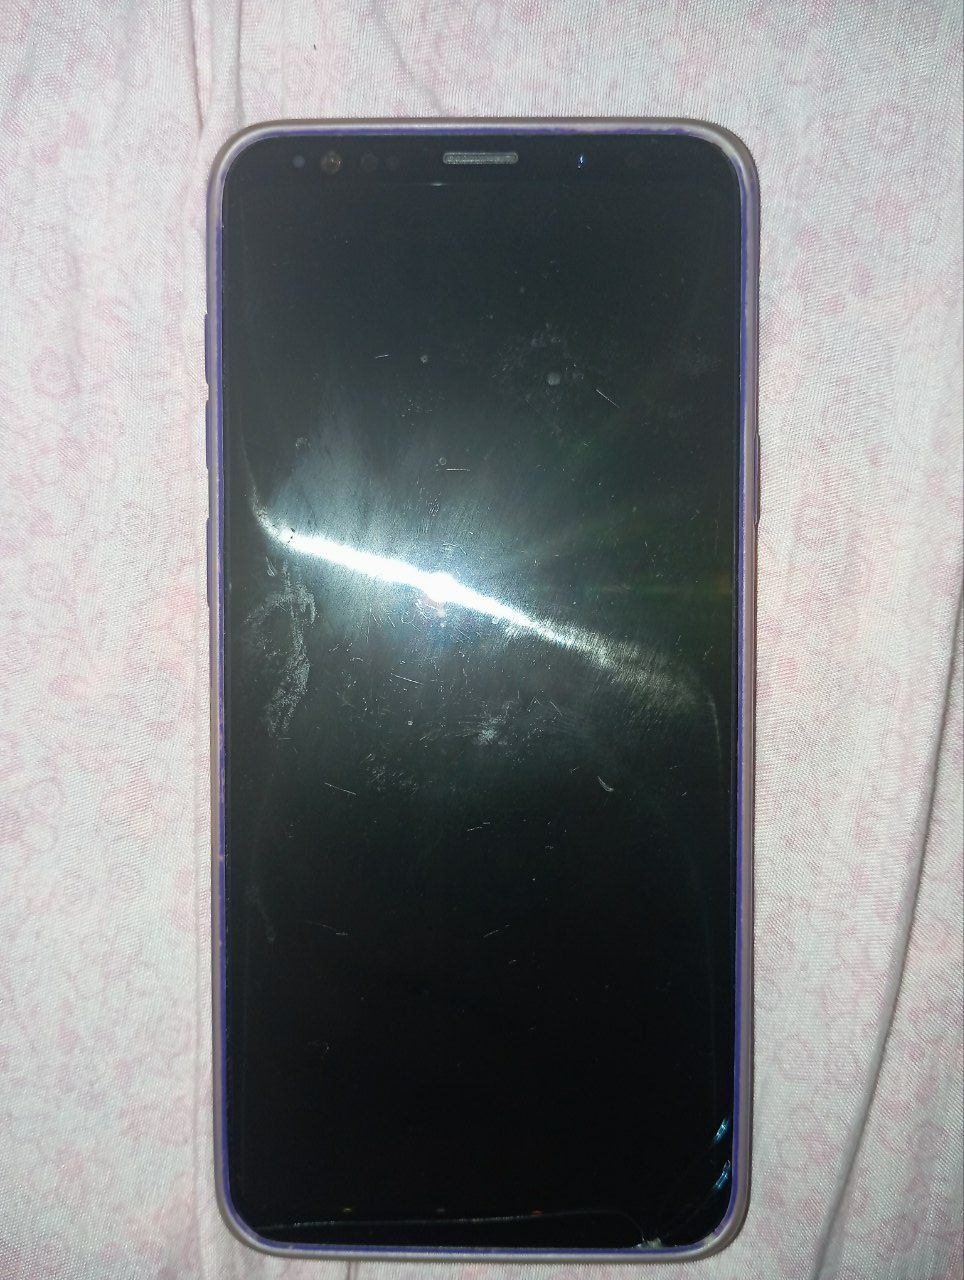 Samsung S9+ idyal
Narx:100$
Abmen yuq
Xotira/64
Kar.Dak/bor Full
Oynas